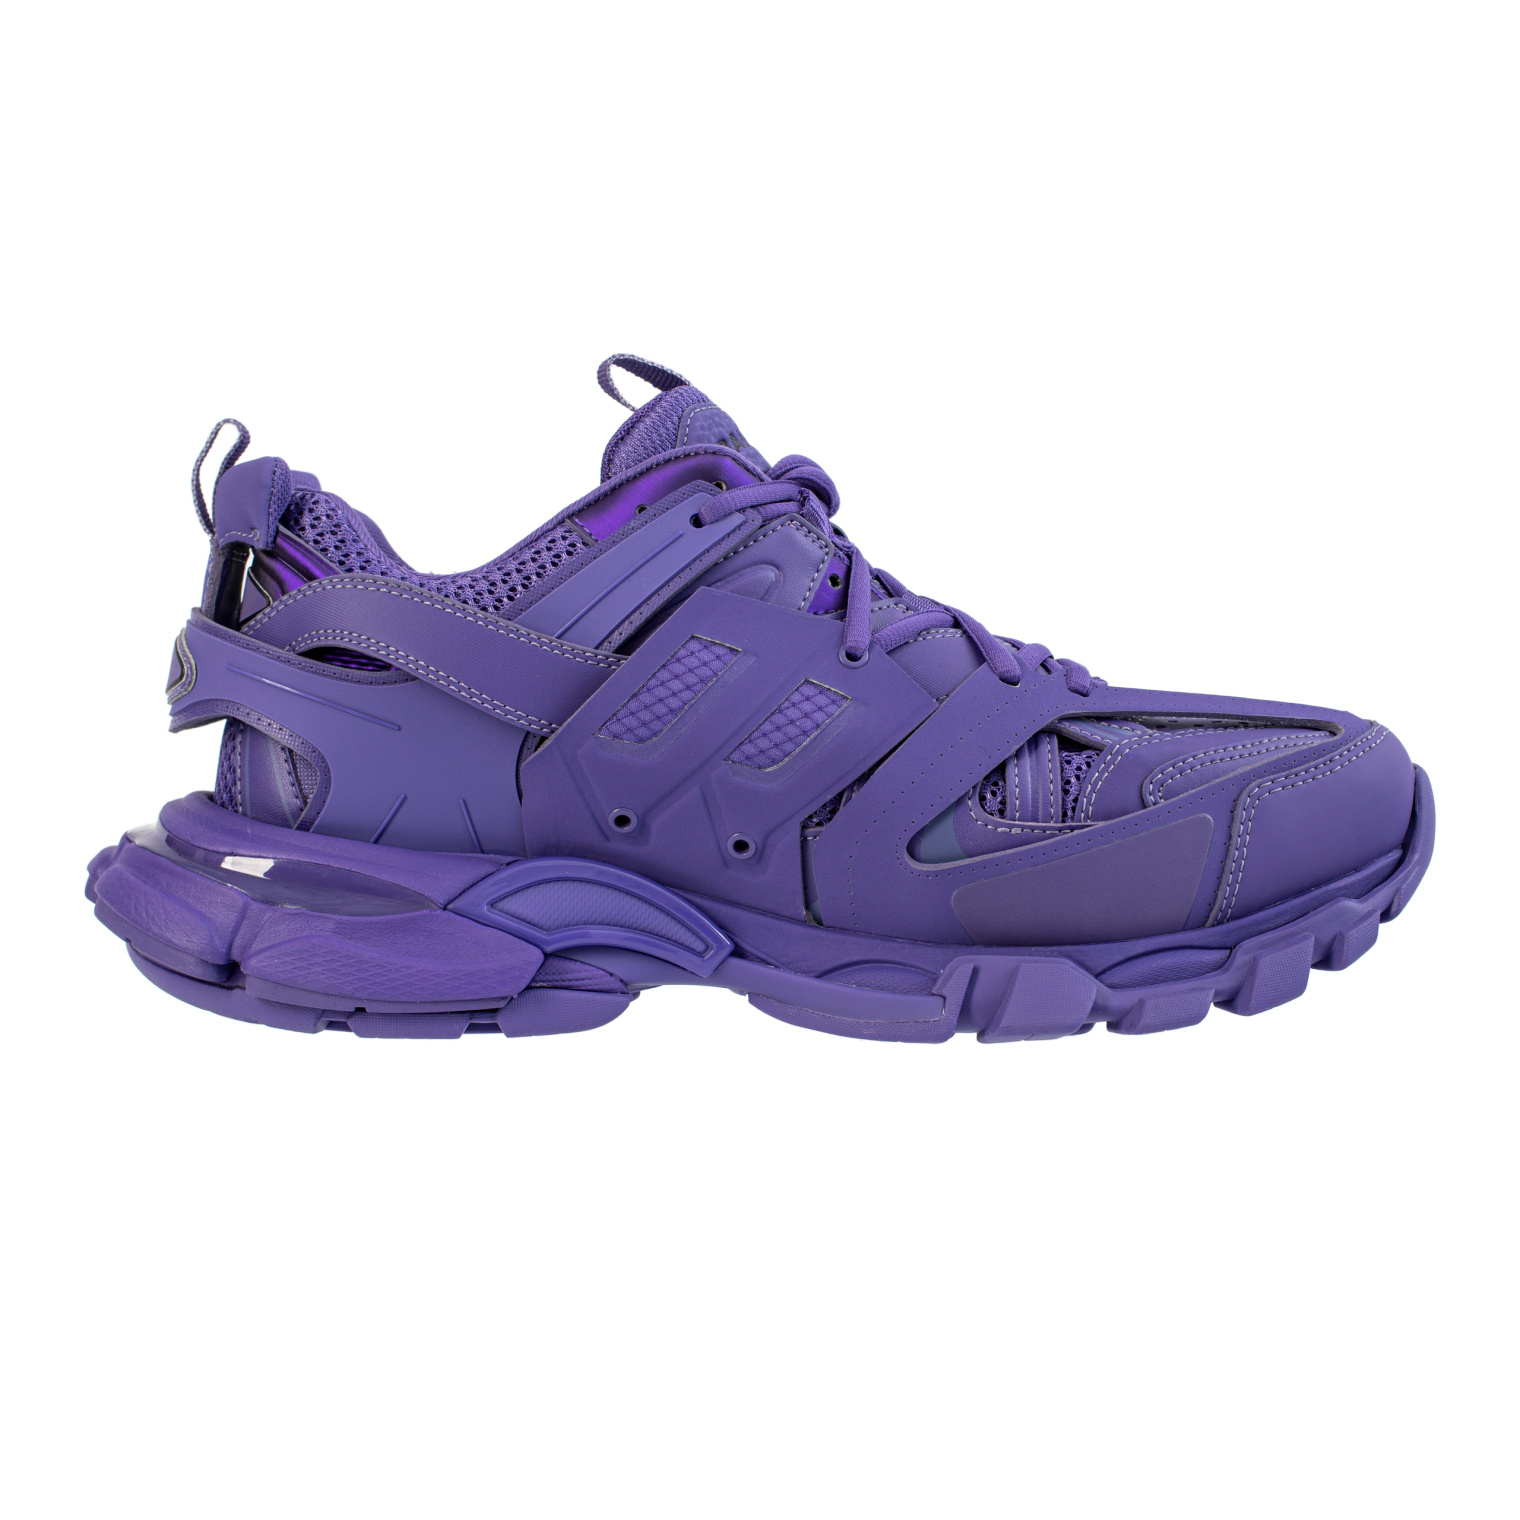 Balenciaga Purple Track sneakers